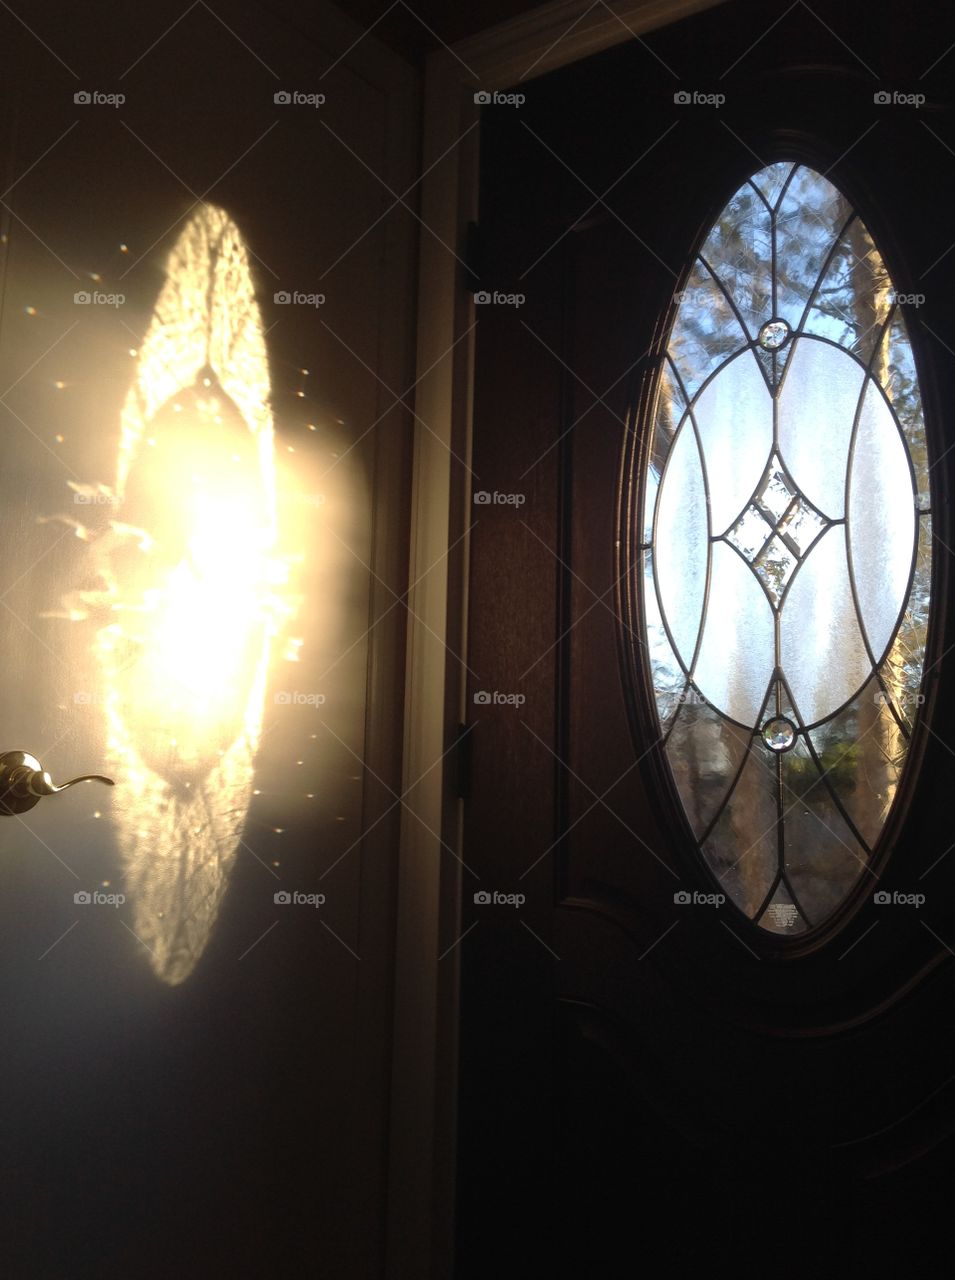 Reflection of sunlight through glass door to closet door.